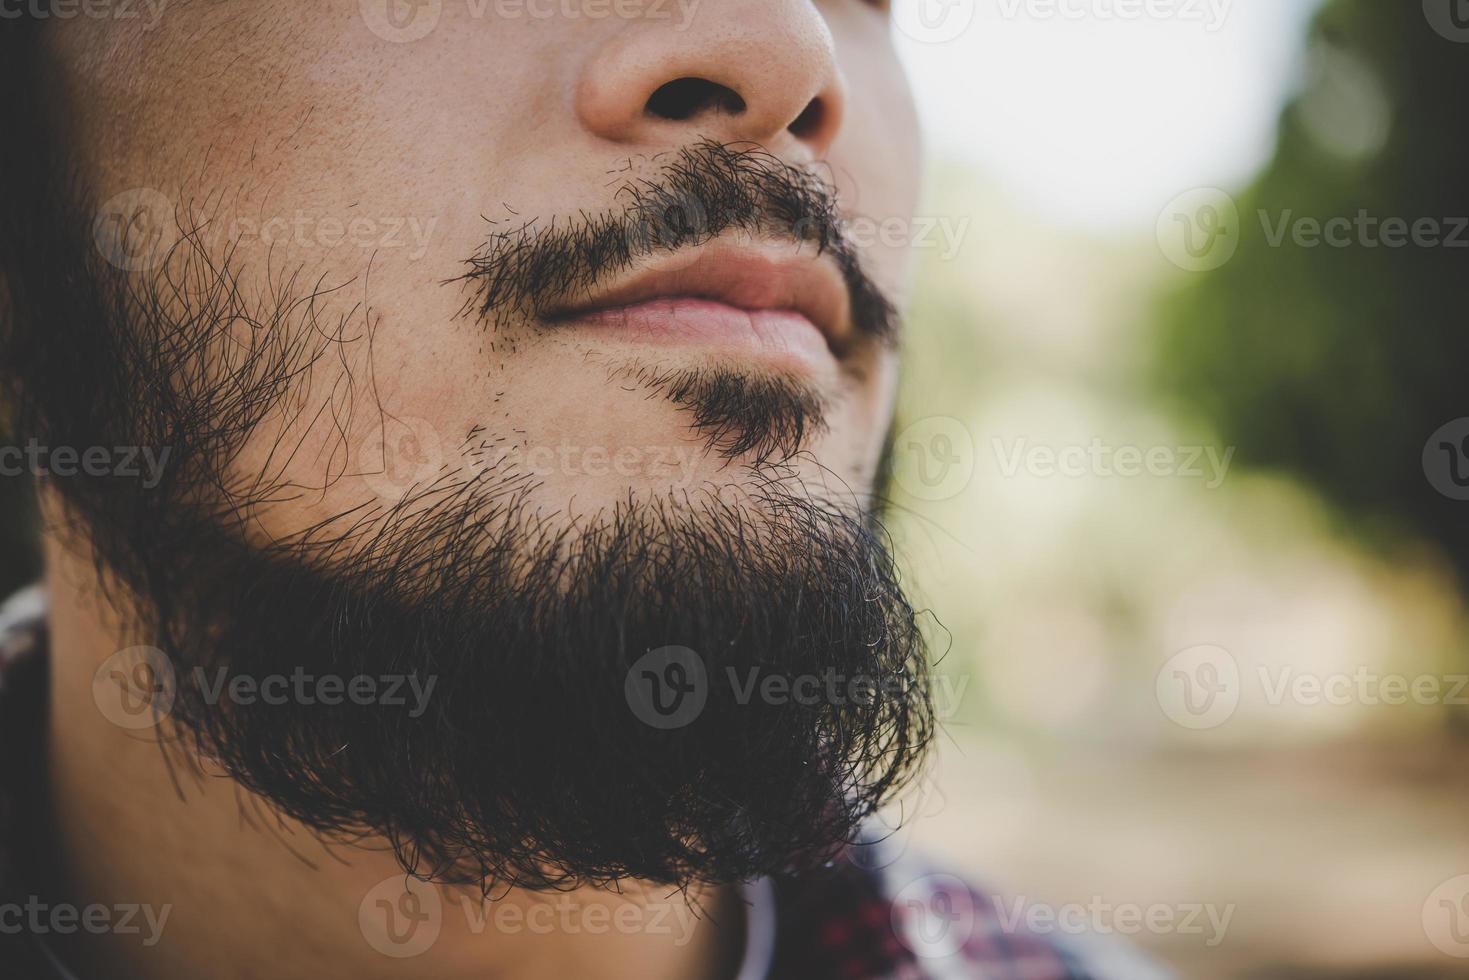 primer plano de la barba del hombre foto